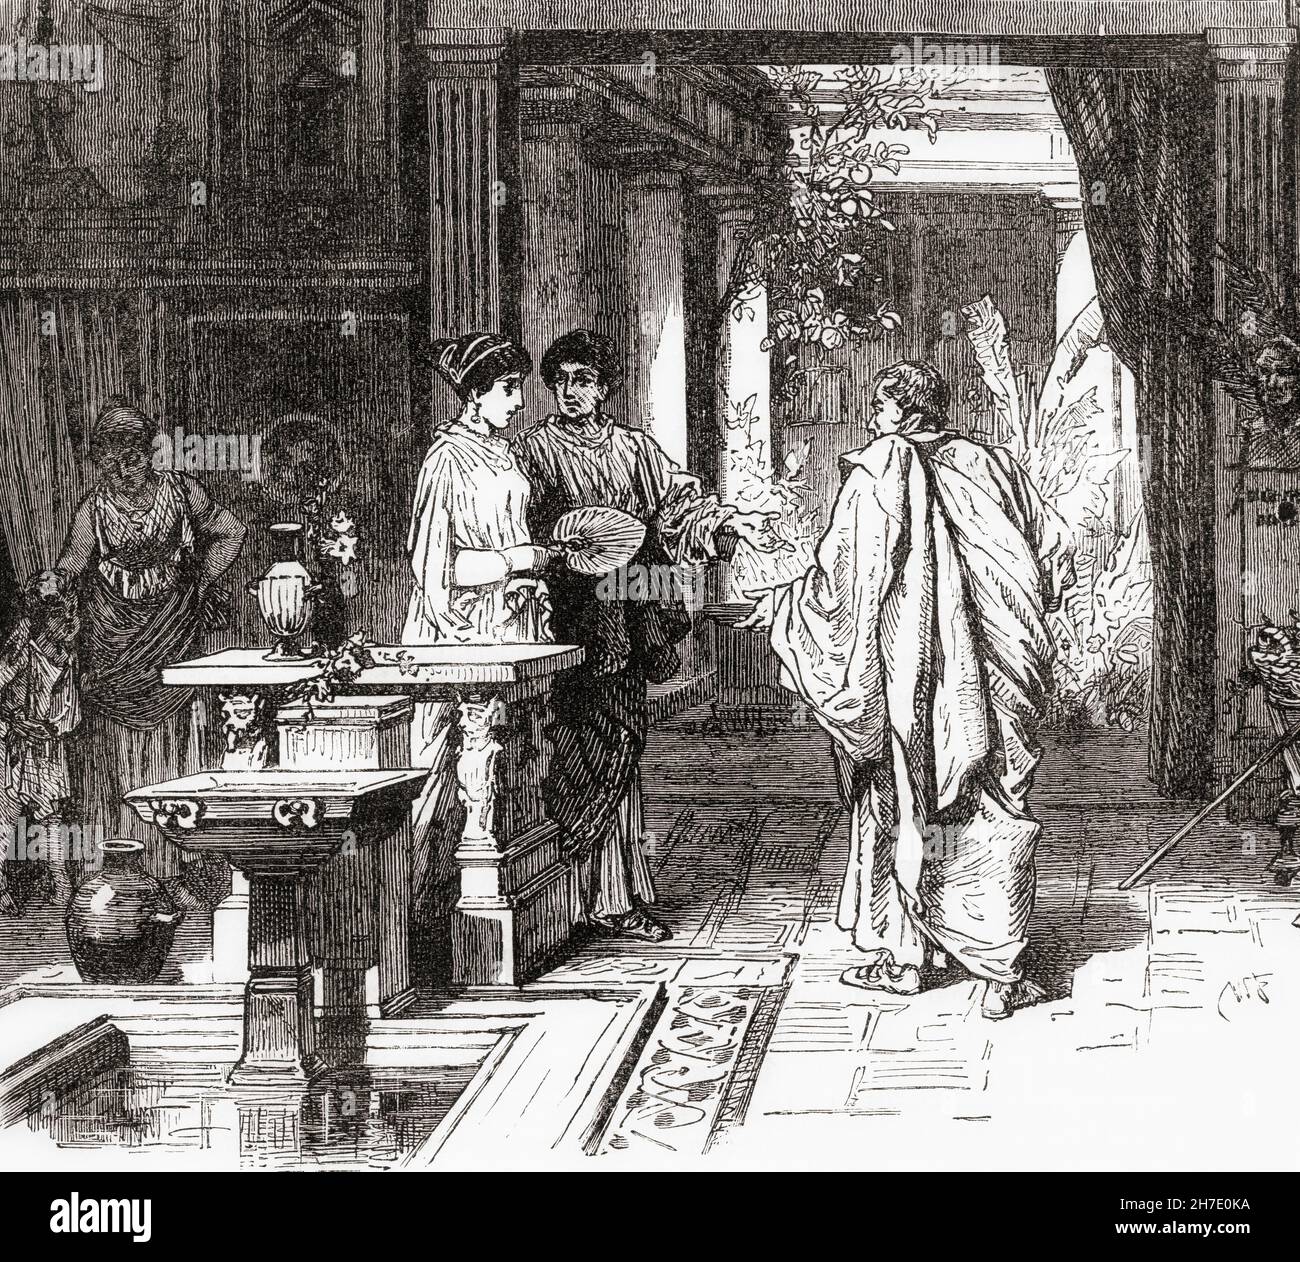 Interno di una casa nell'antica Roma. Dalla storia universale illustrata di Cassell, pubblicata nel 1883. Foto Stock